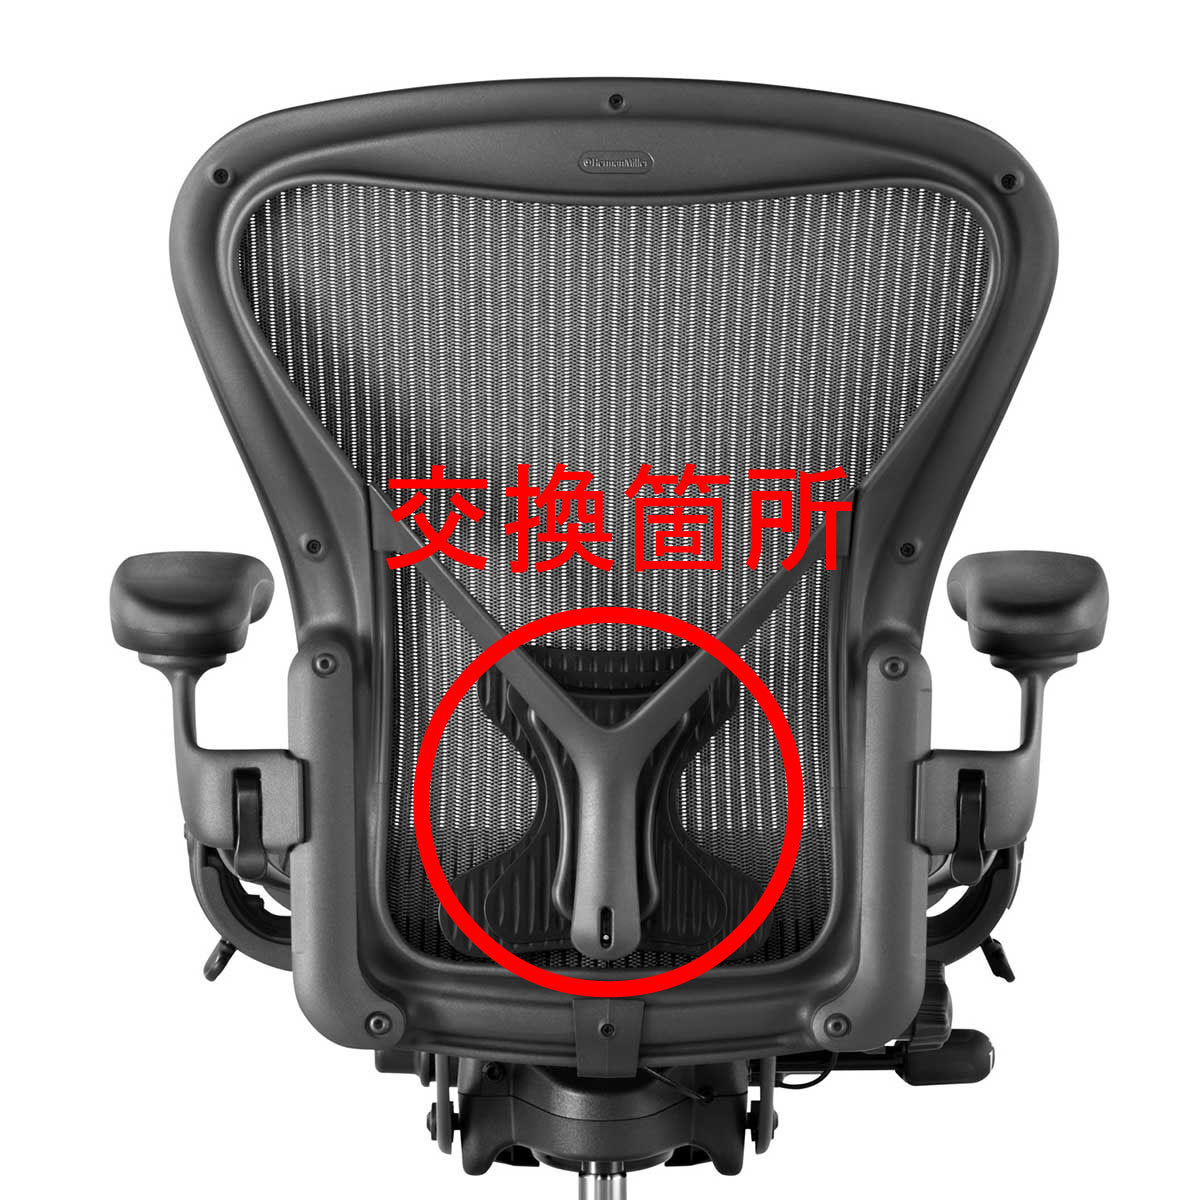 アーロンチェア ポスチャーフィット クッション 互換品 ハーマンミラー チェア Aタイプ Bタイプ Cタイプ Aeron Chair 椅子 イス 交換 部品の画像5